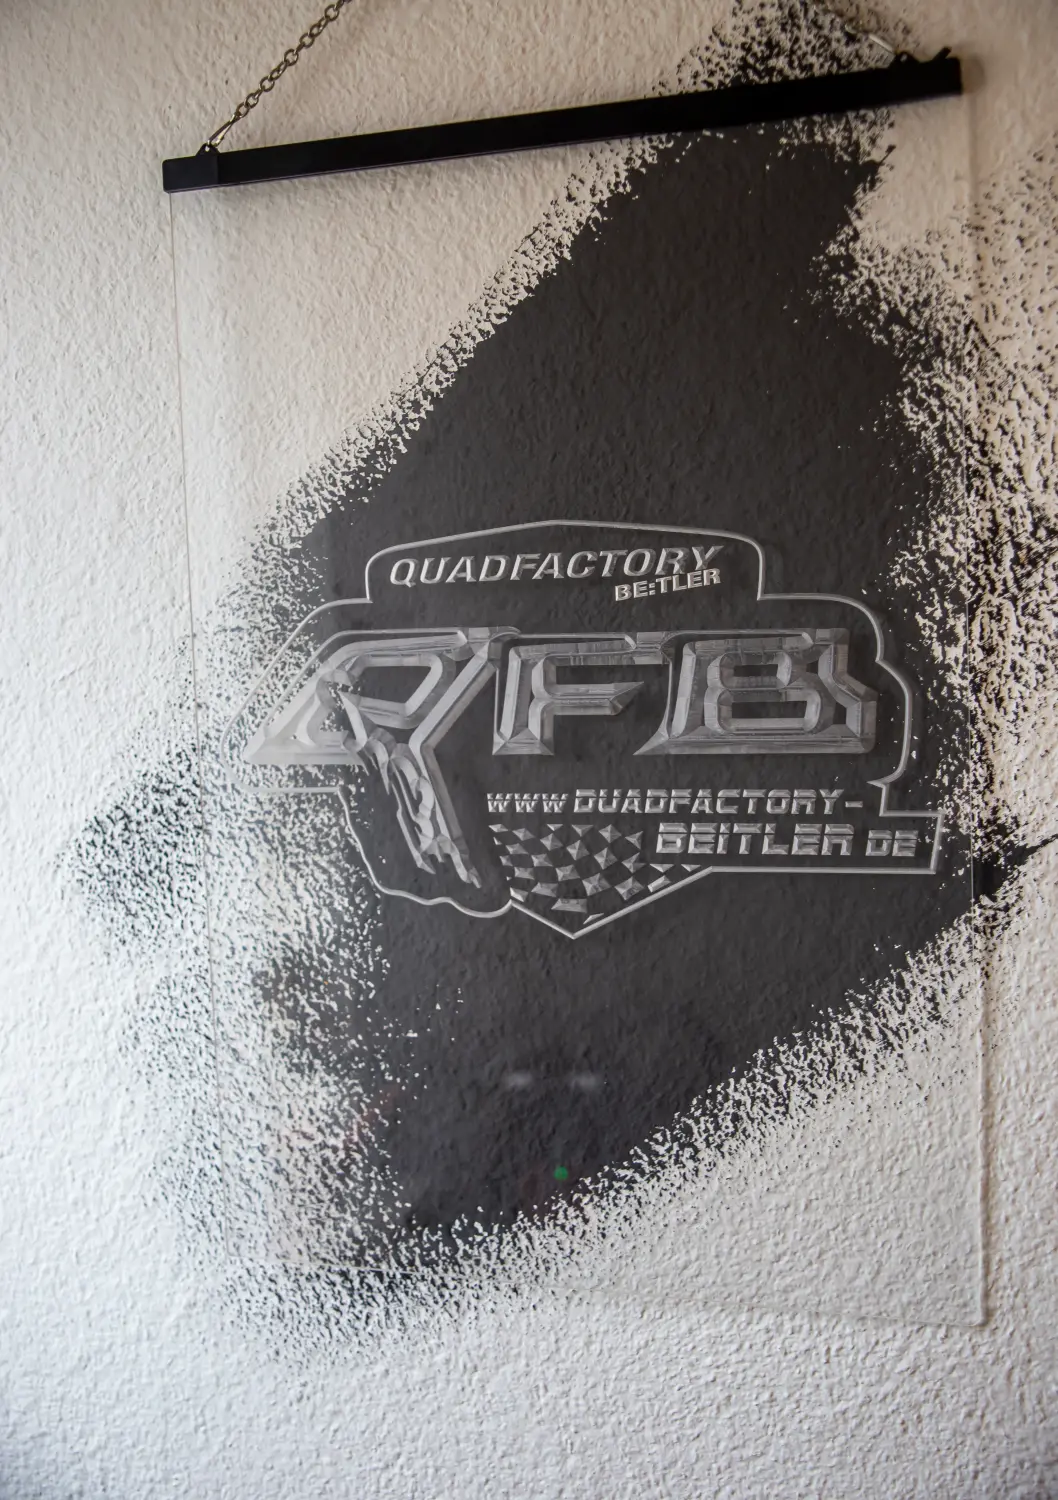 Quadfactory Beitler Graffiti an der Wand